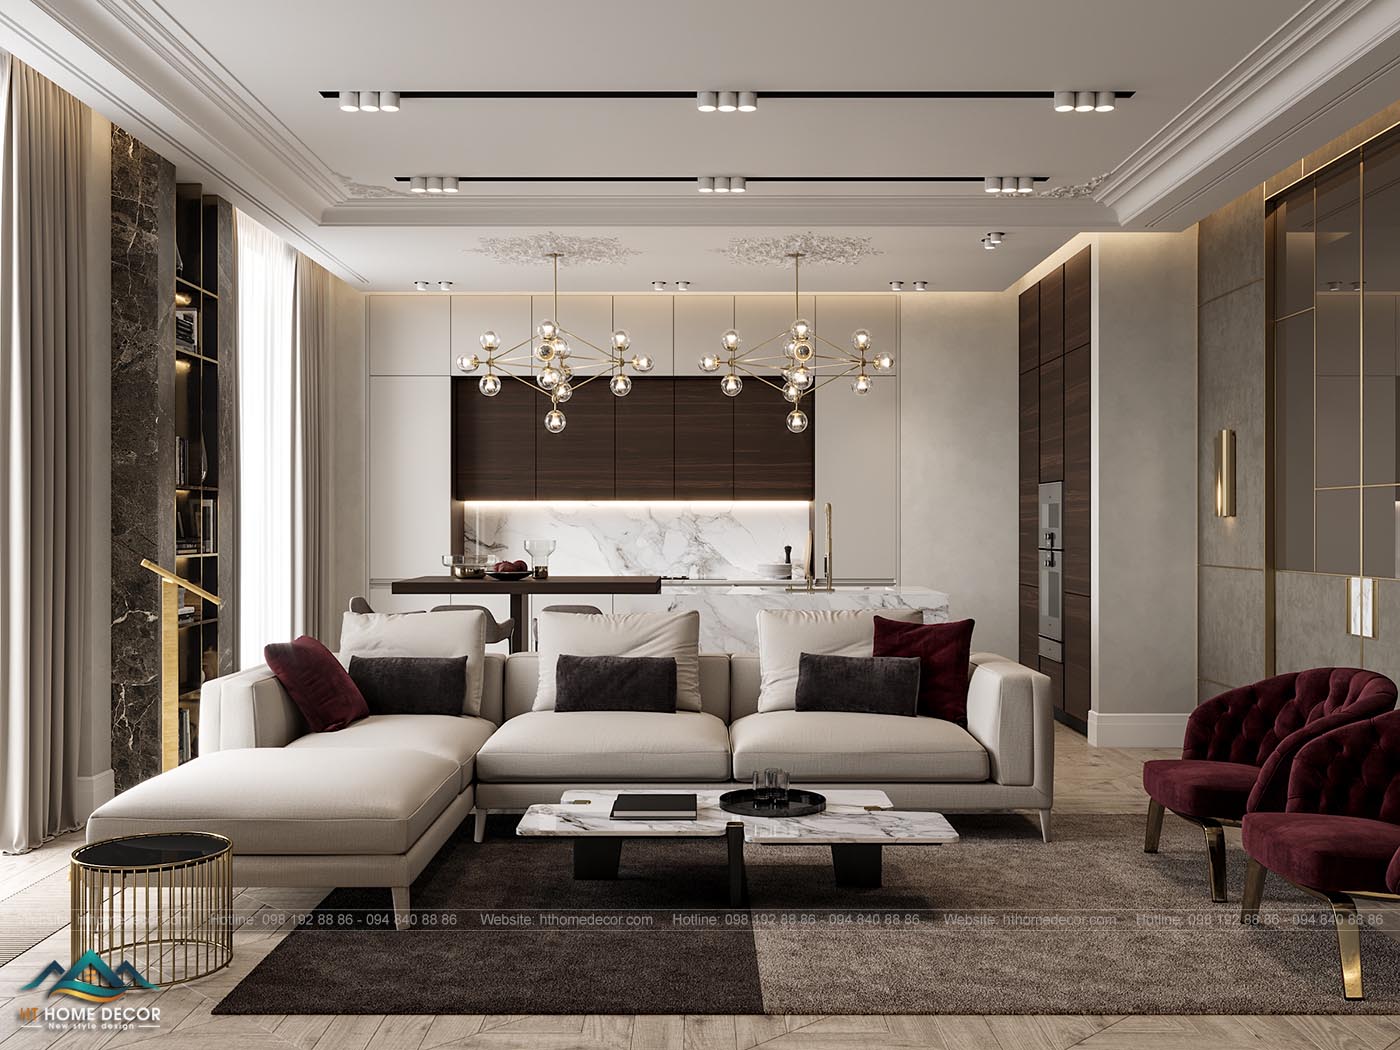 Sofa trắng kết hợp với gối tựa màu nâu, mang cùng tone màu hòa hợp với tổng thể thiết kế nội thất chung cư sang trọng này. 